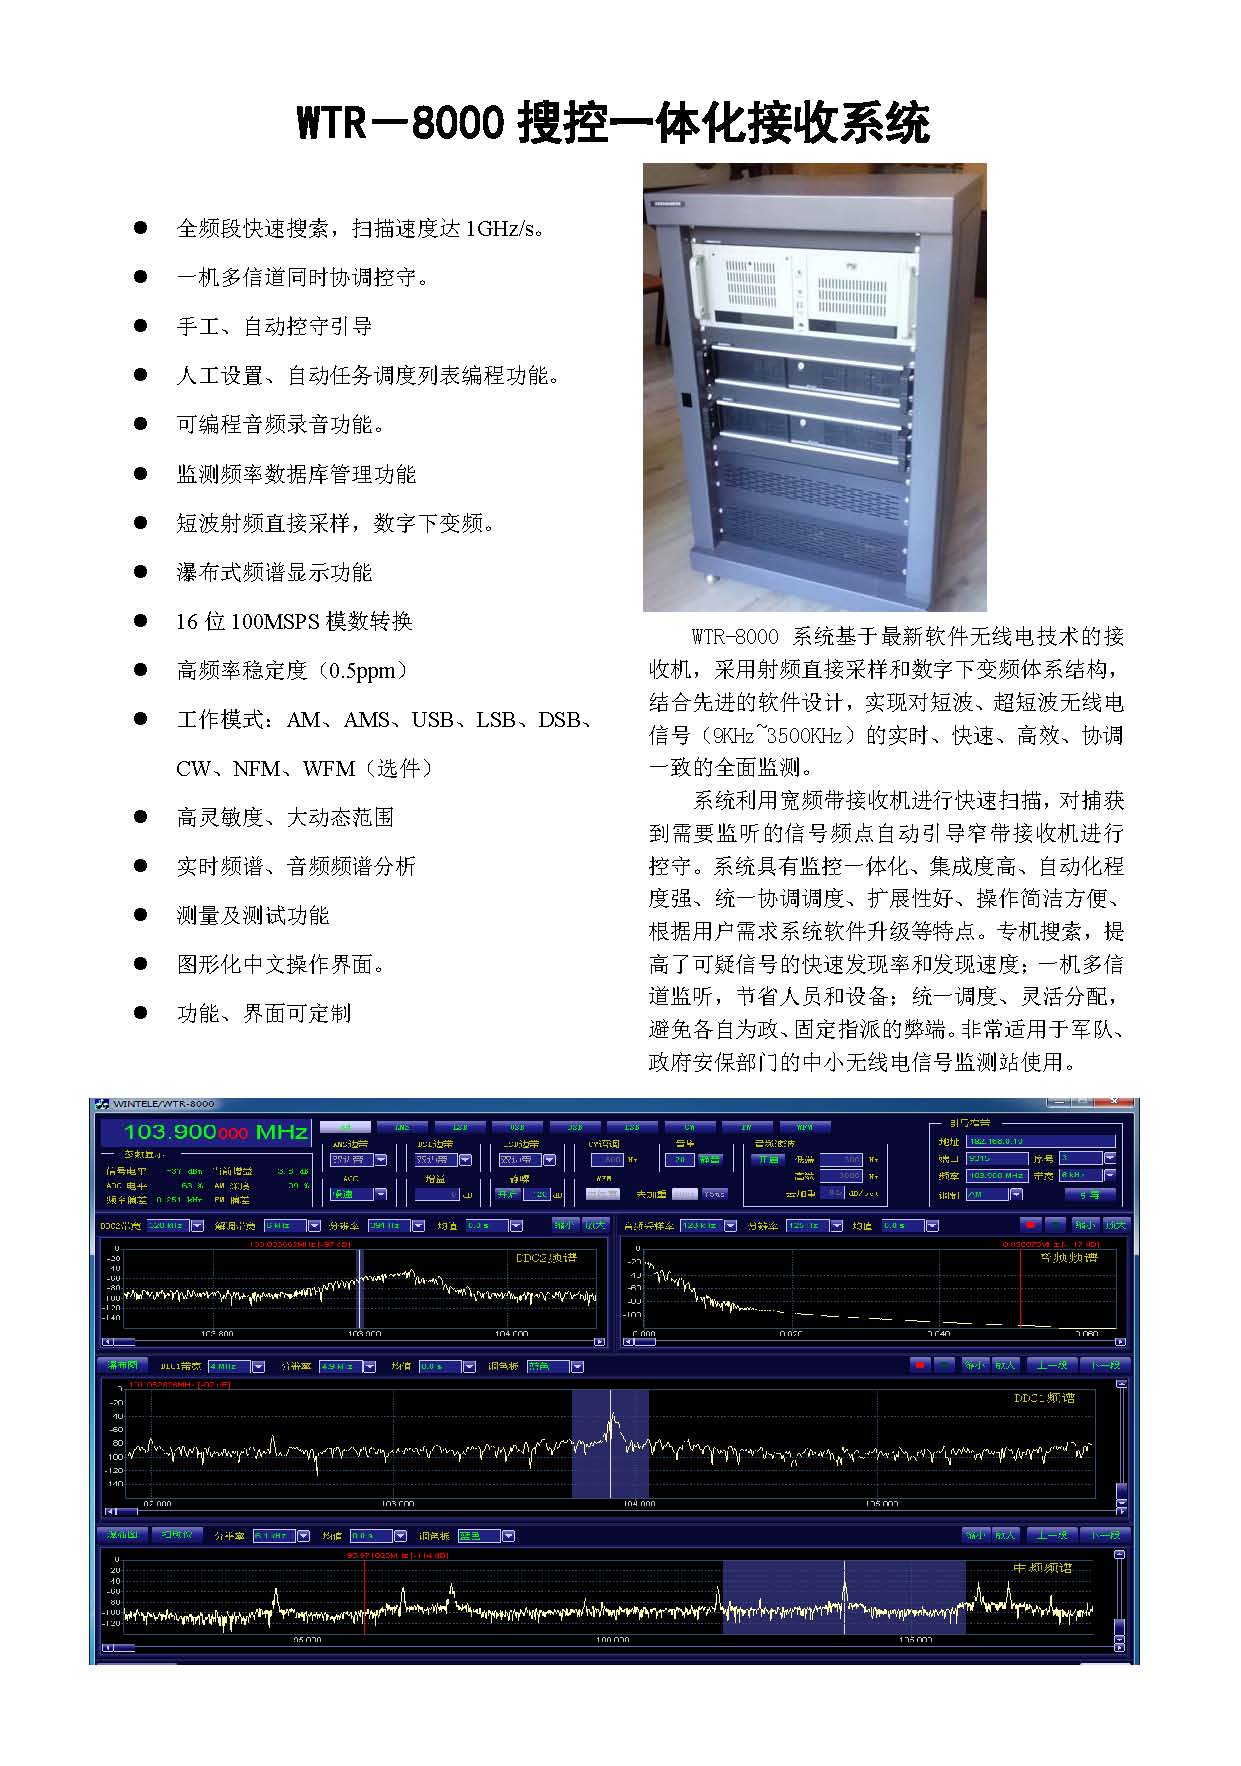 WTR-8000搜控一体化监测系统